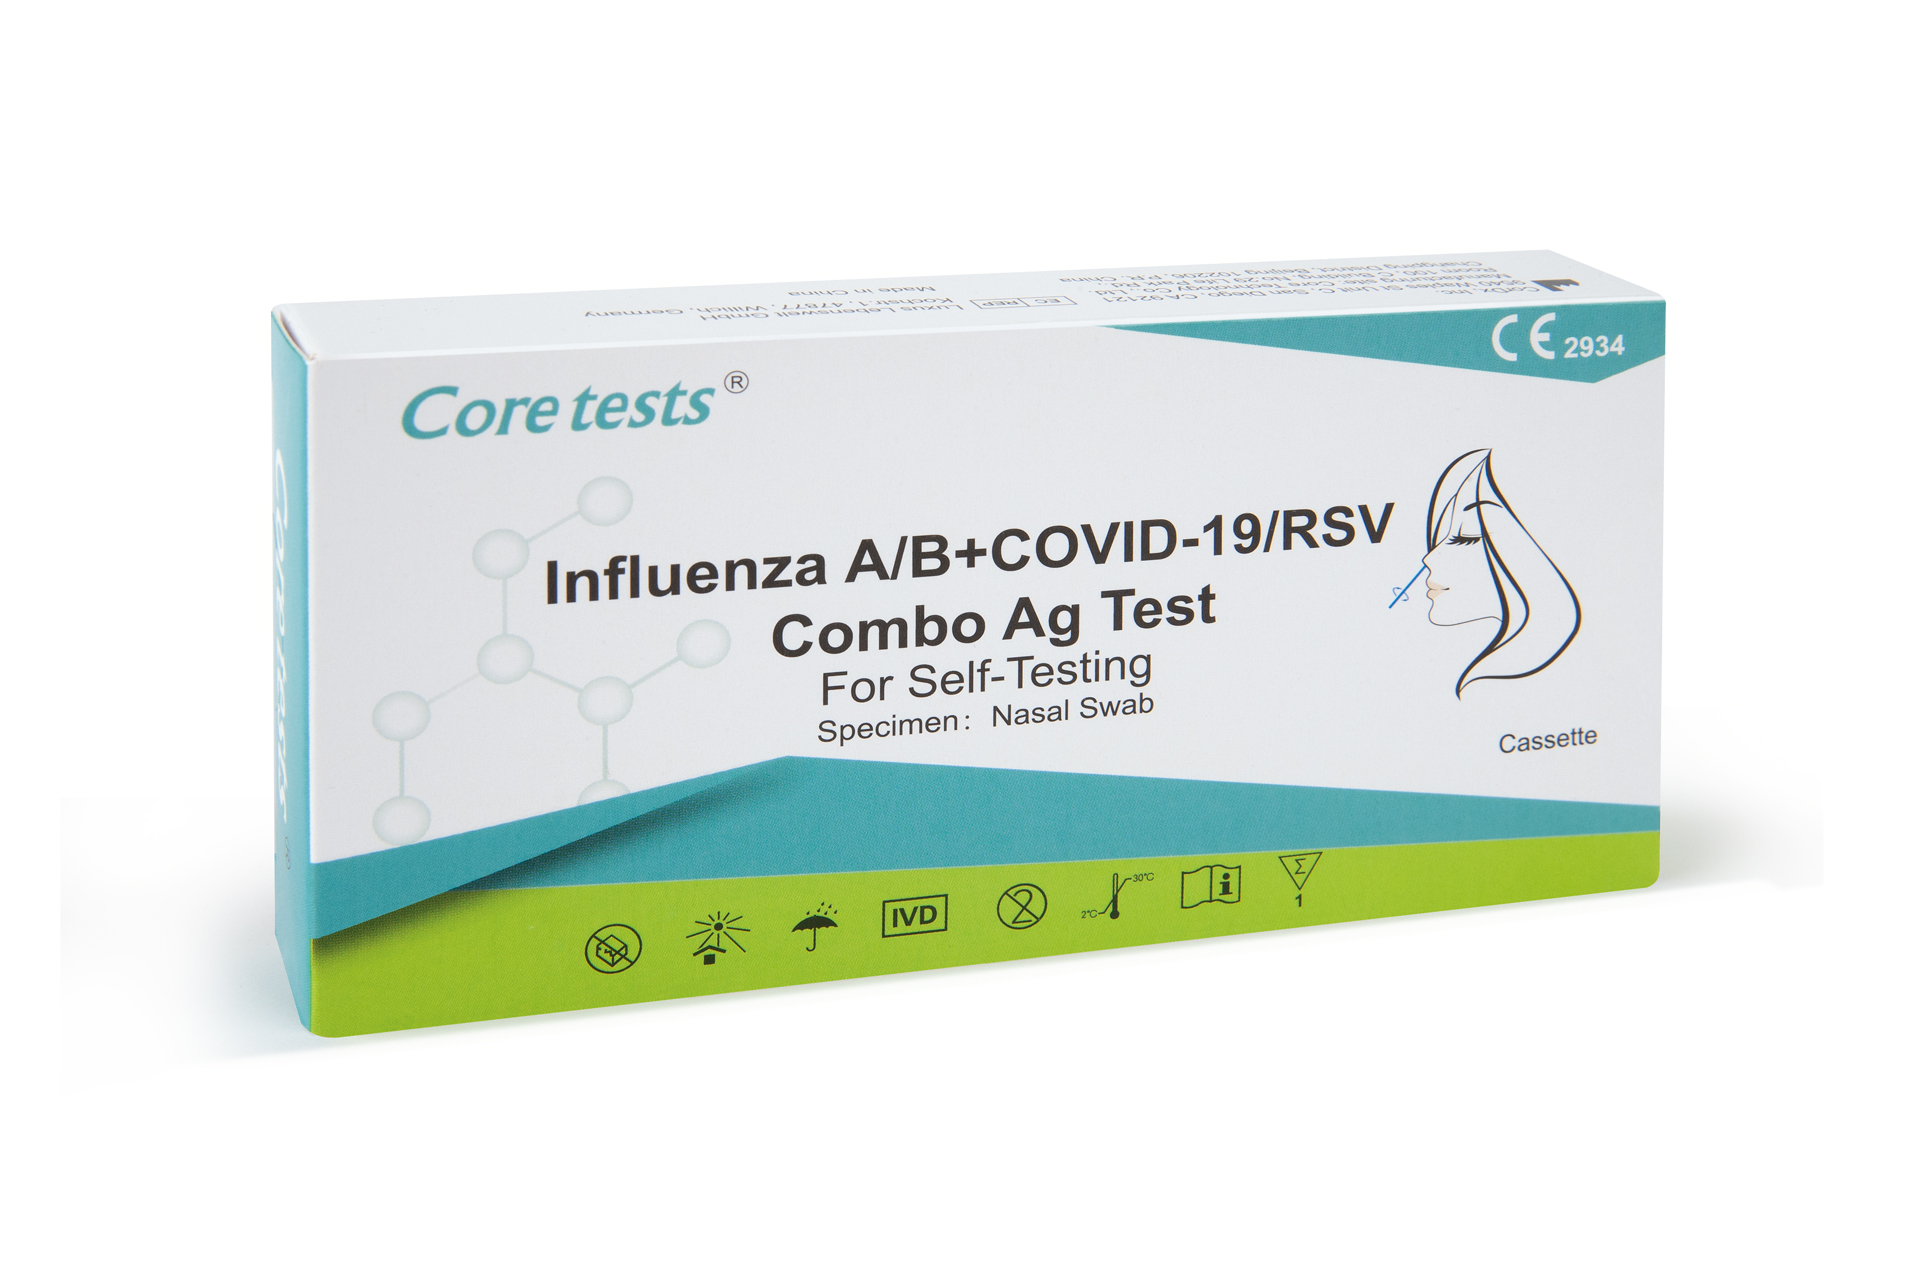 Coretests Covid-19/RSV & Influenza A+B Combo Test